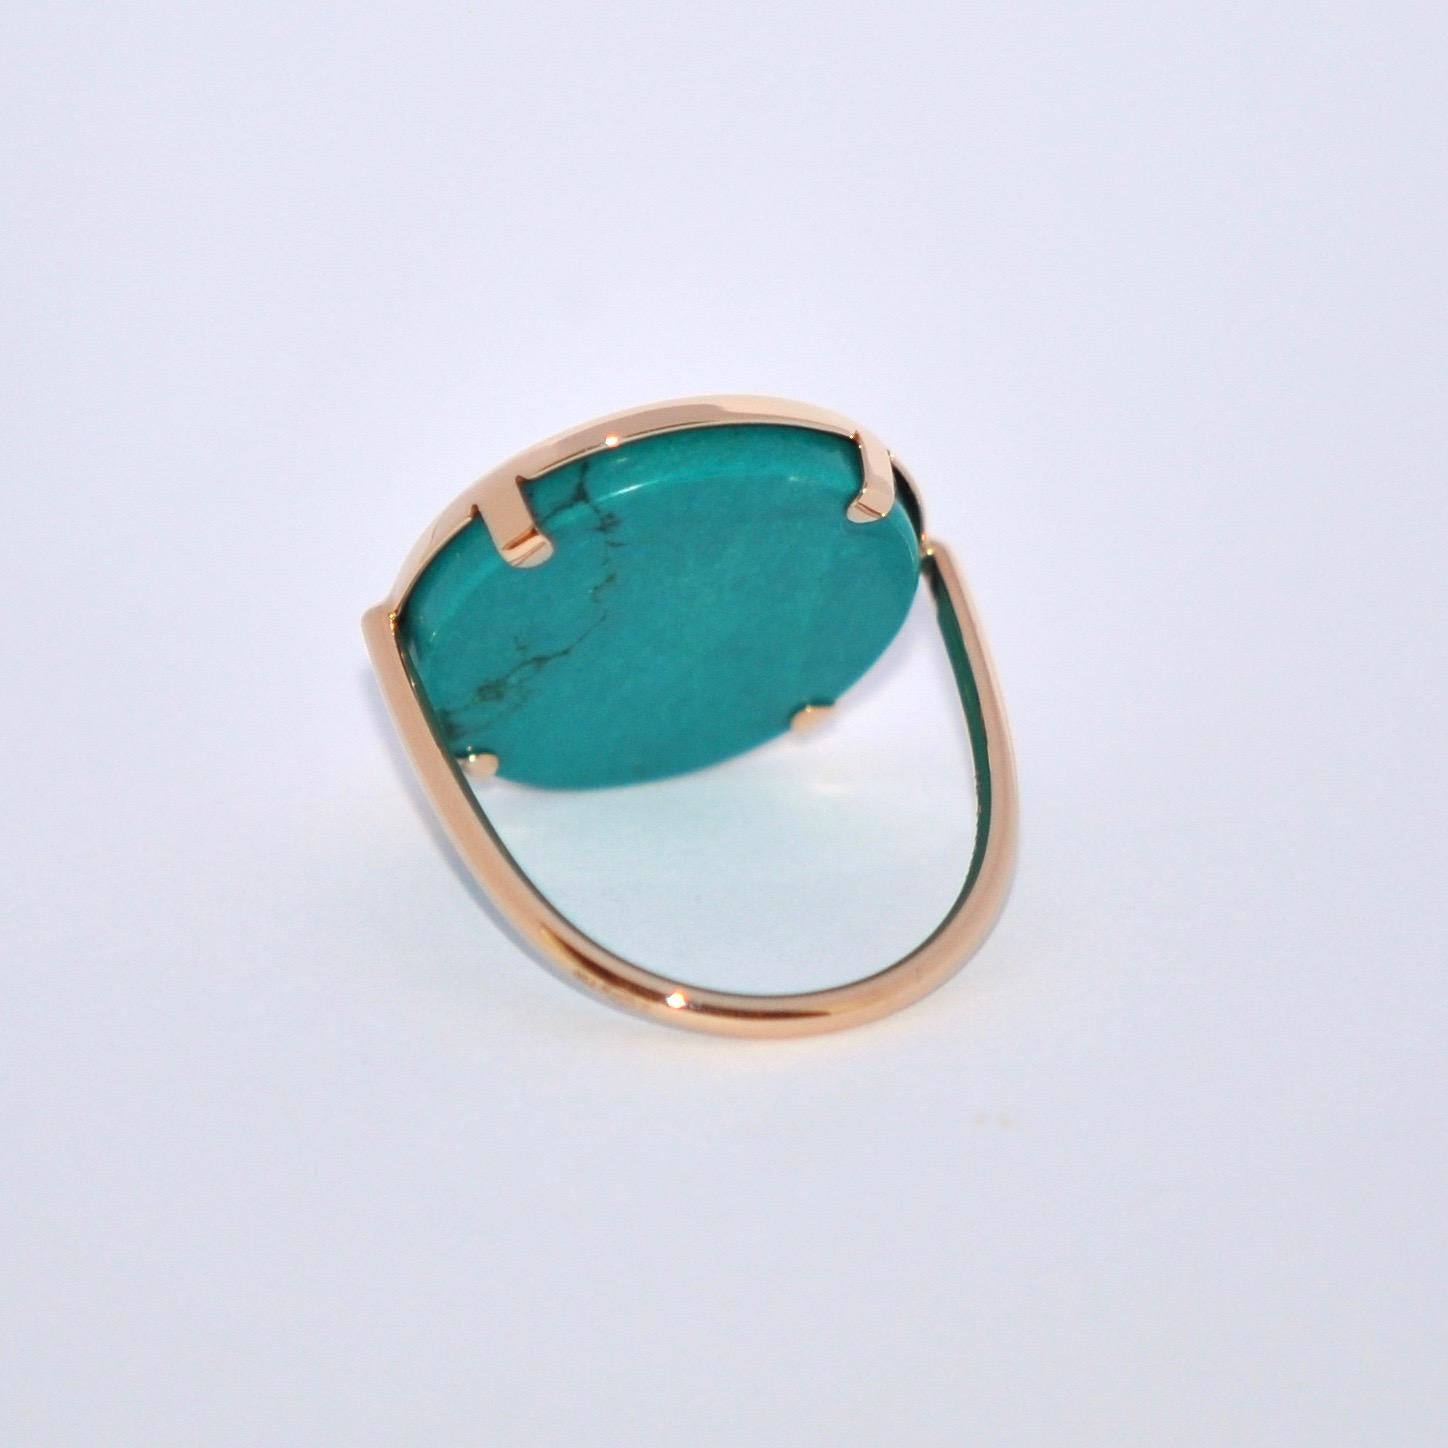 Round Cut Round Turquoise and Rose Gold 18 Karat Fashion Ring